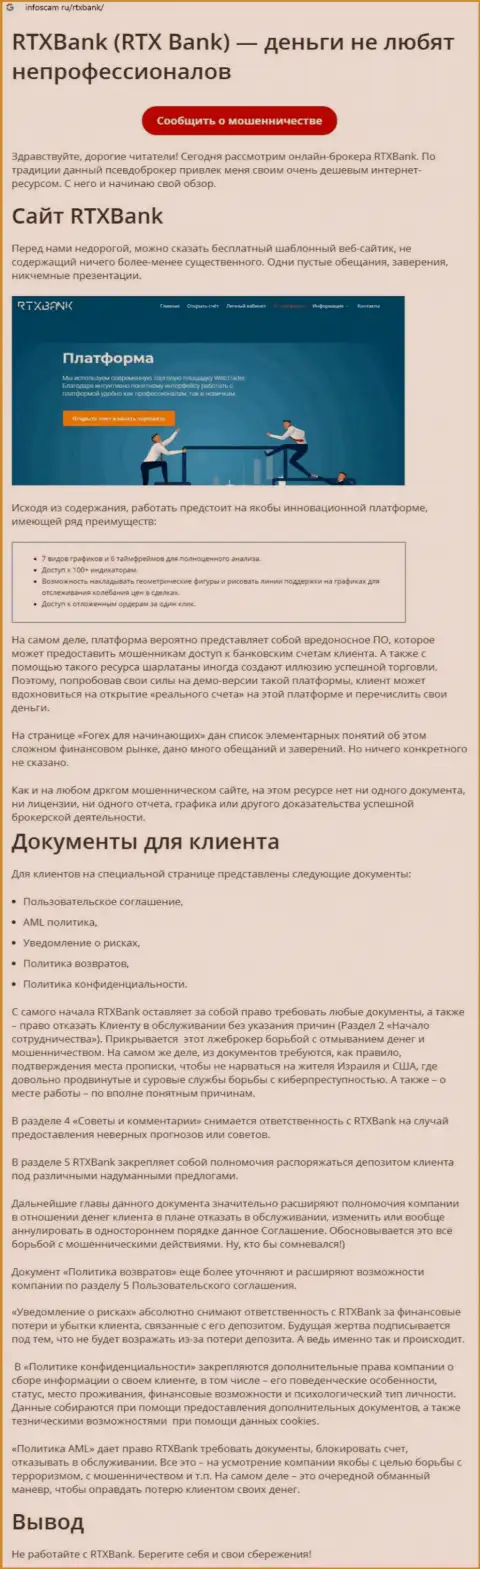 Организация RTXBank - это ВОРЫ !!! Обзор с доказательством разводняка